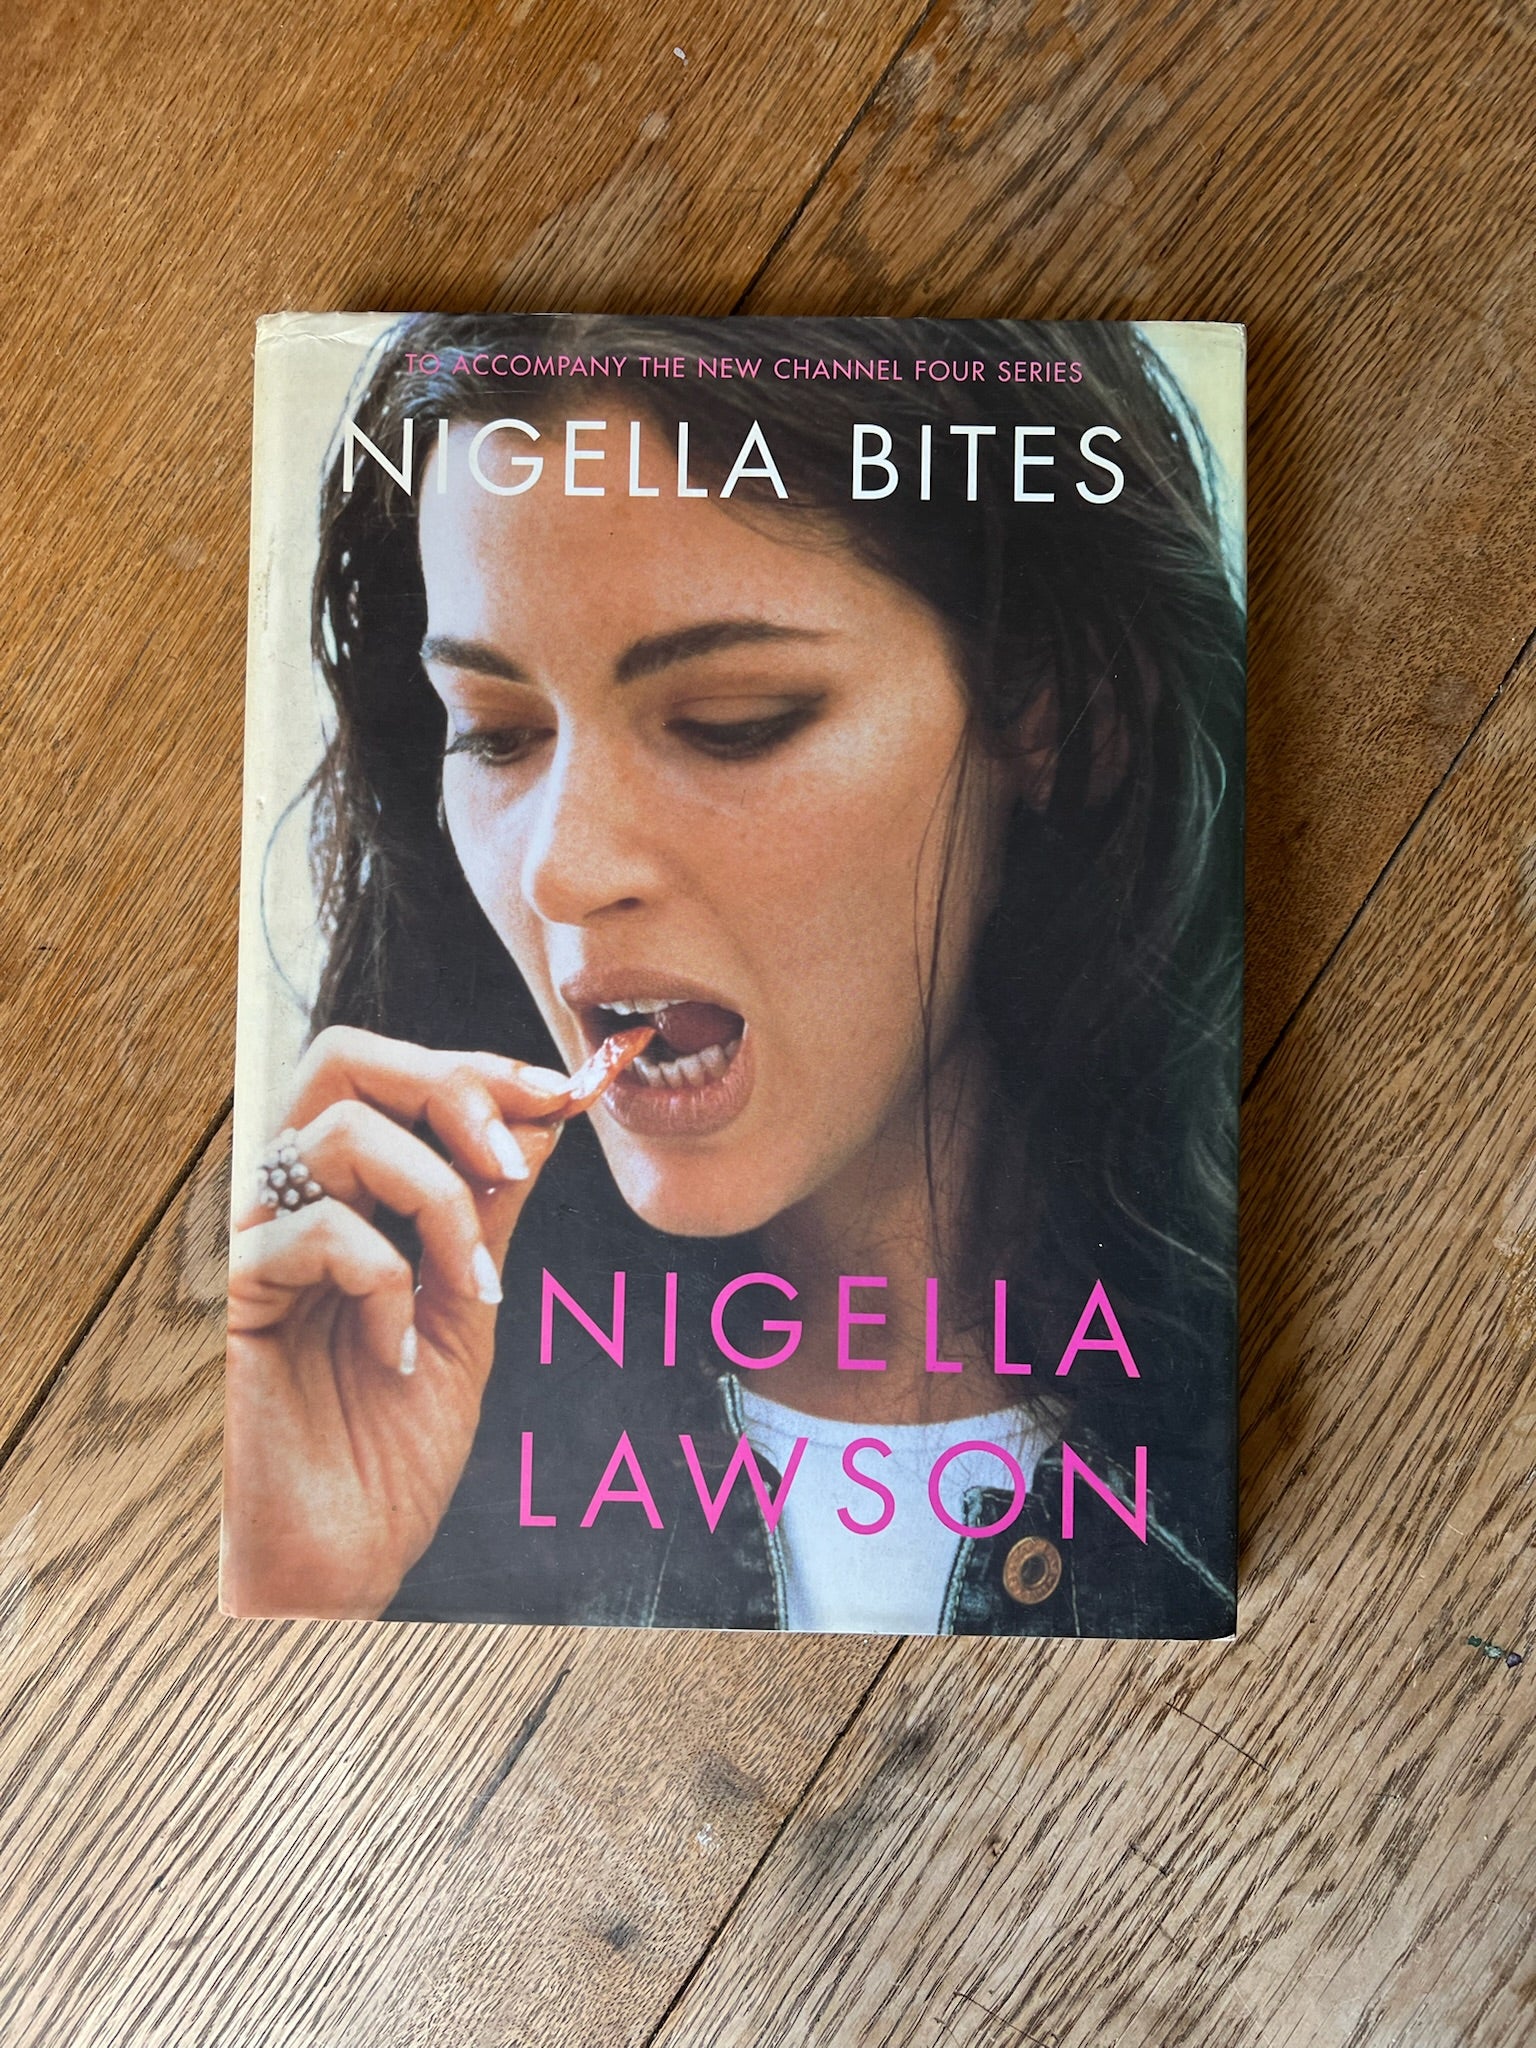 “NIGELLA BITES” Nigella Lawson